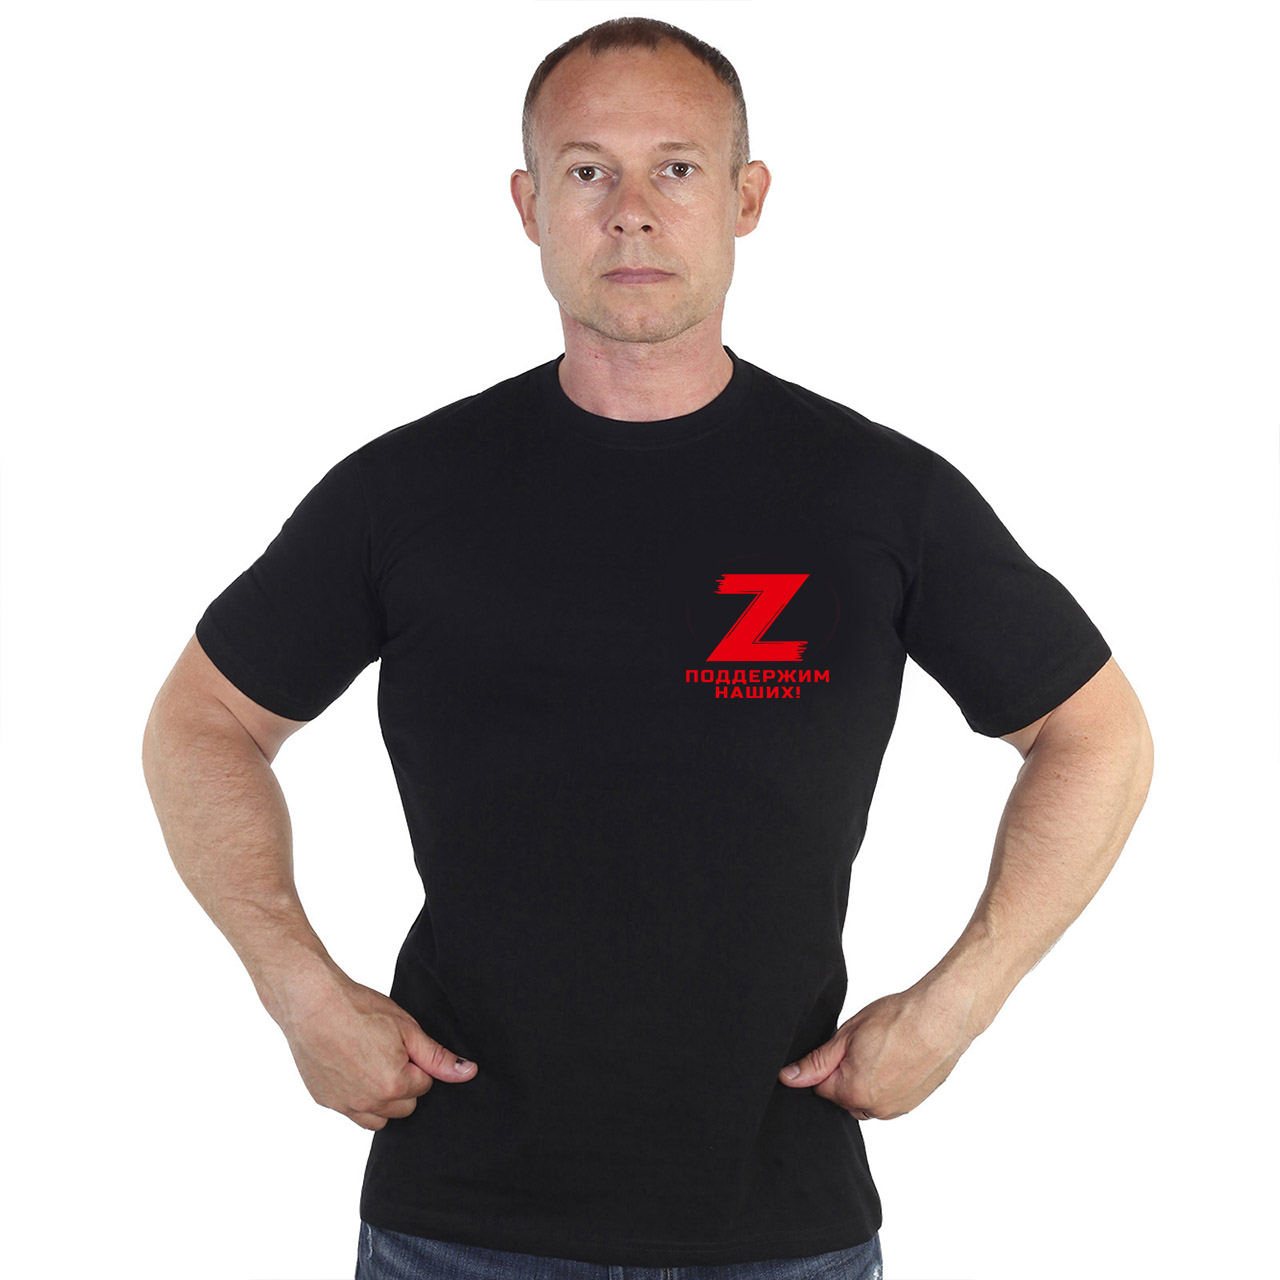 Купить мужскую футболку Z в интернет магазине